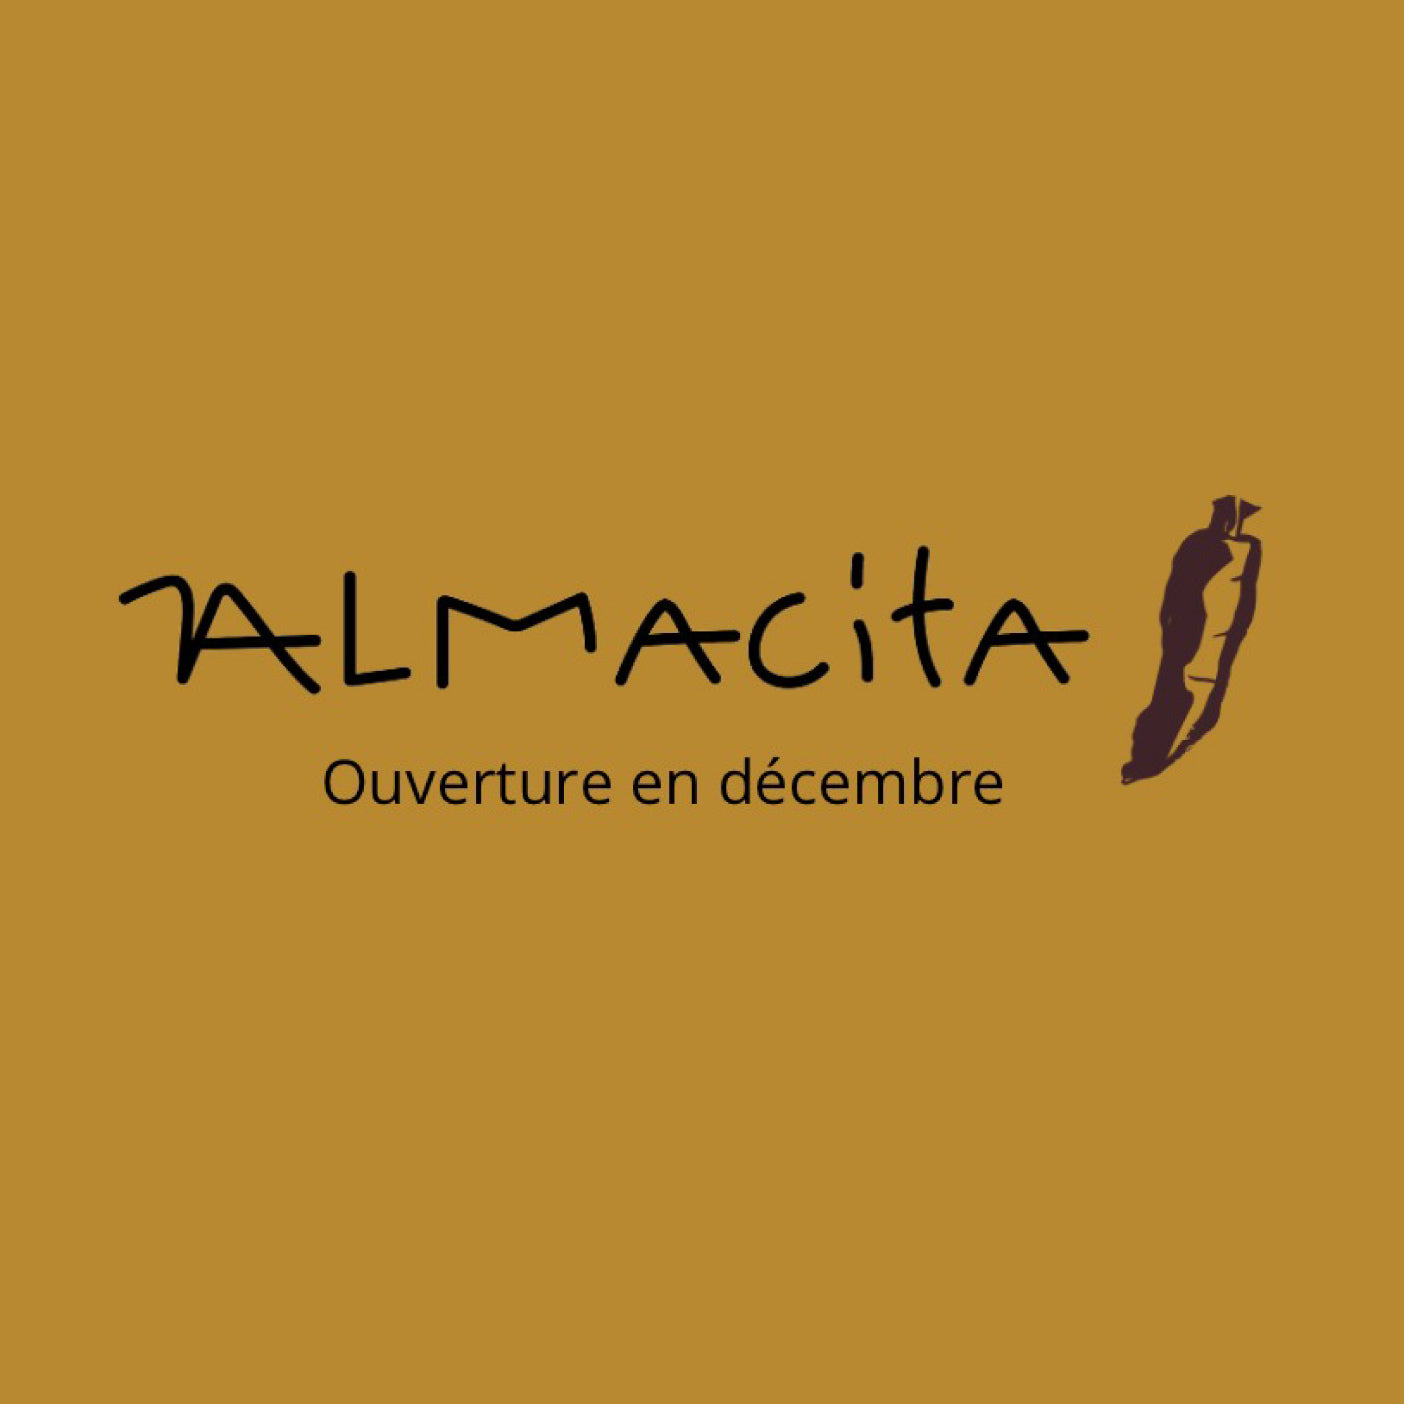 Almacita